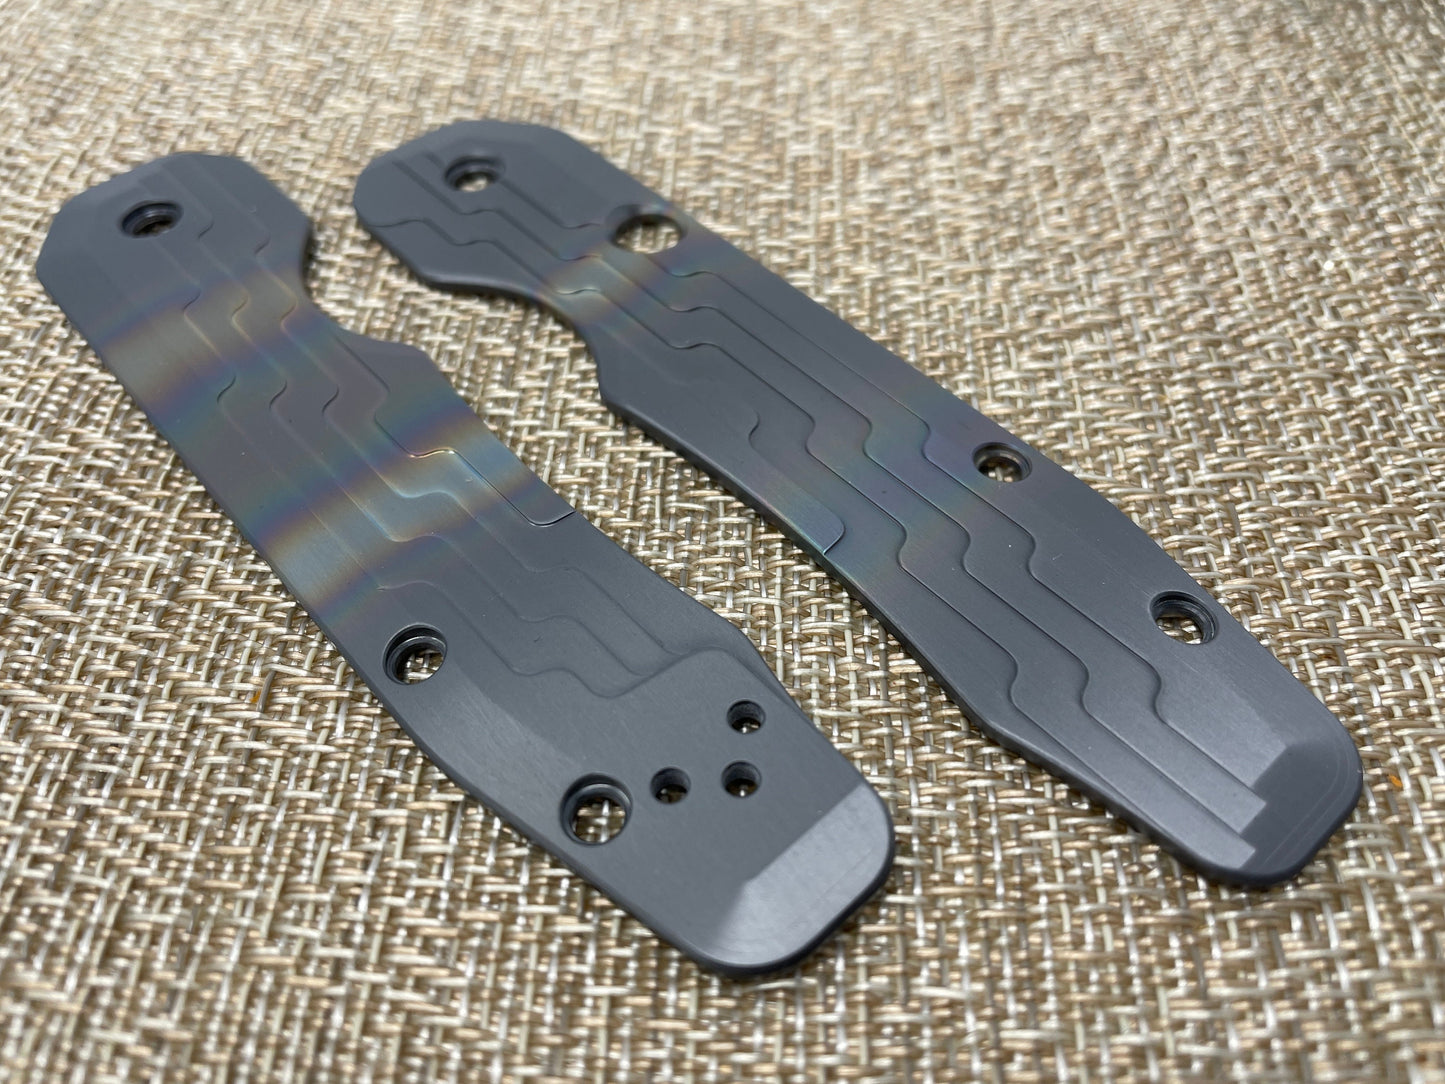 Black Rainbow AZTEC Zirconium Scales for Spyderco SMOCK